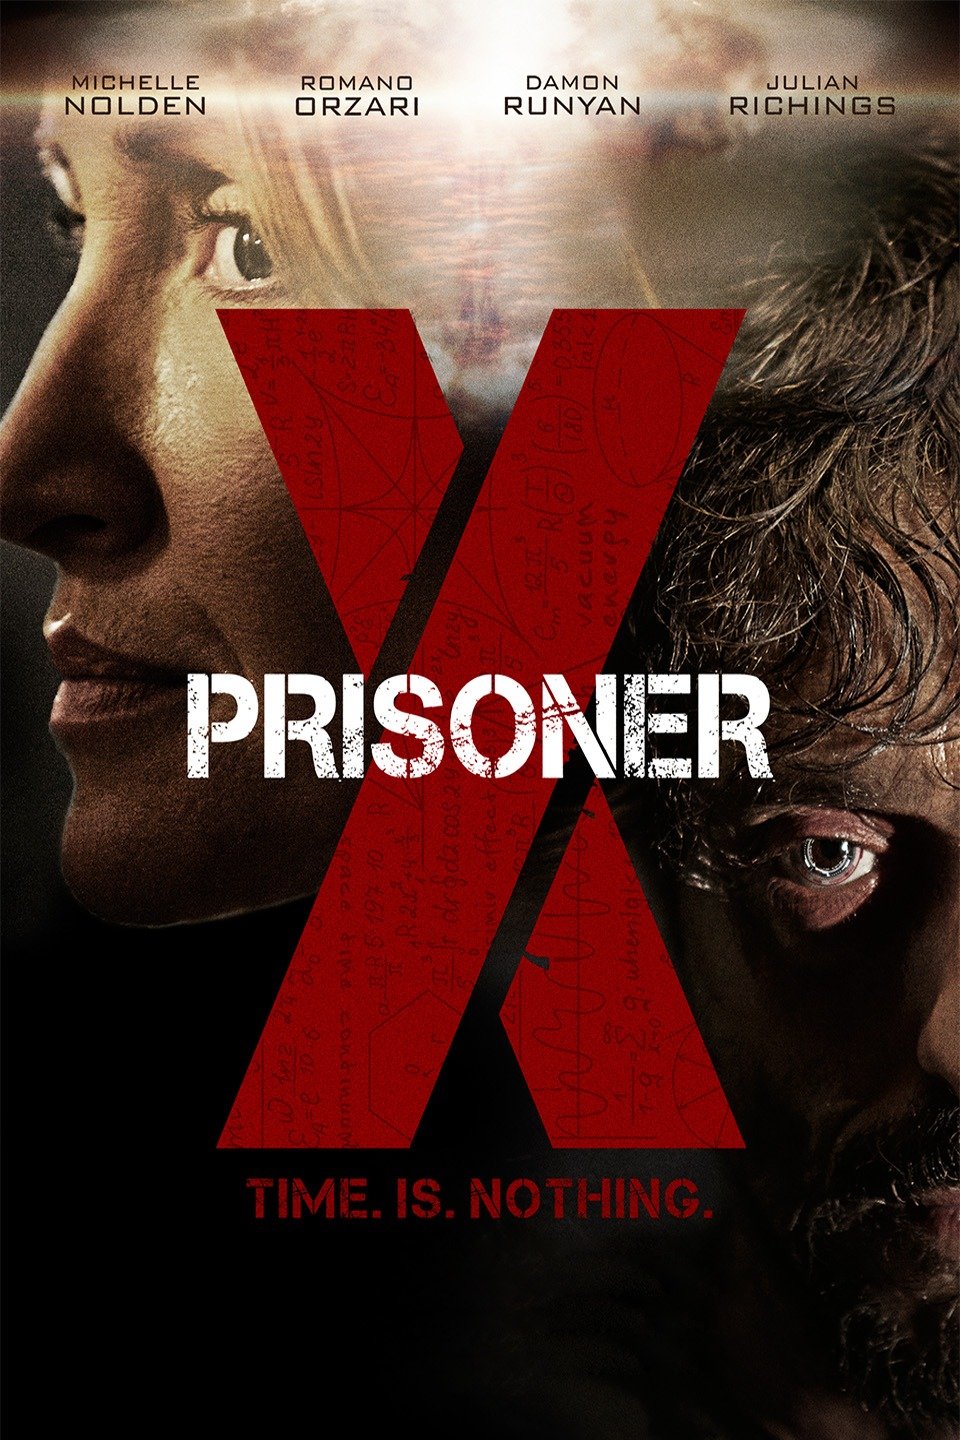 Prisoner X-Prisoner X